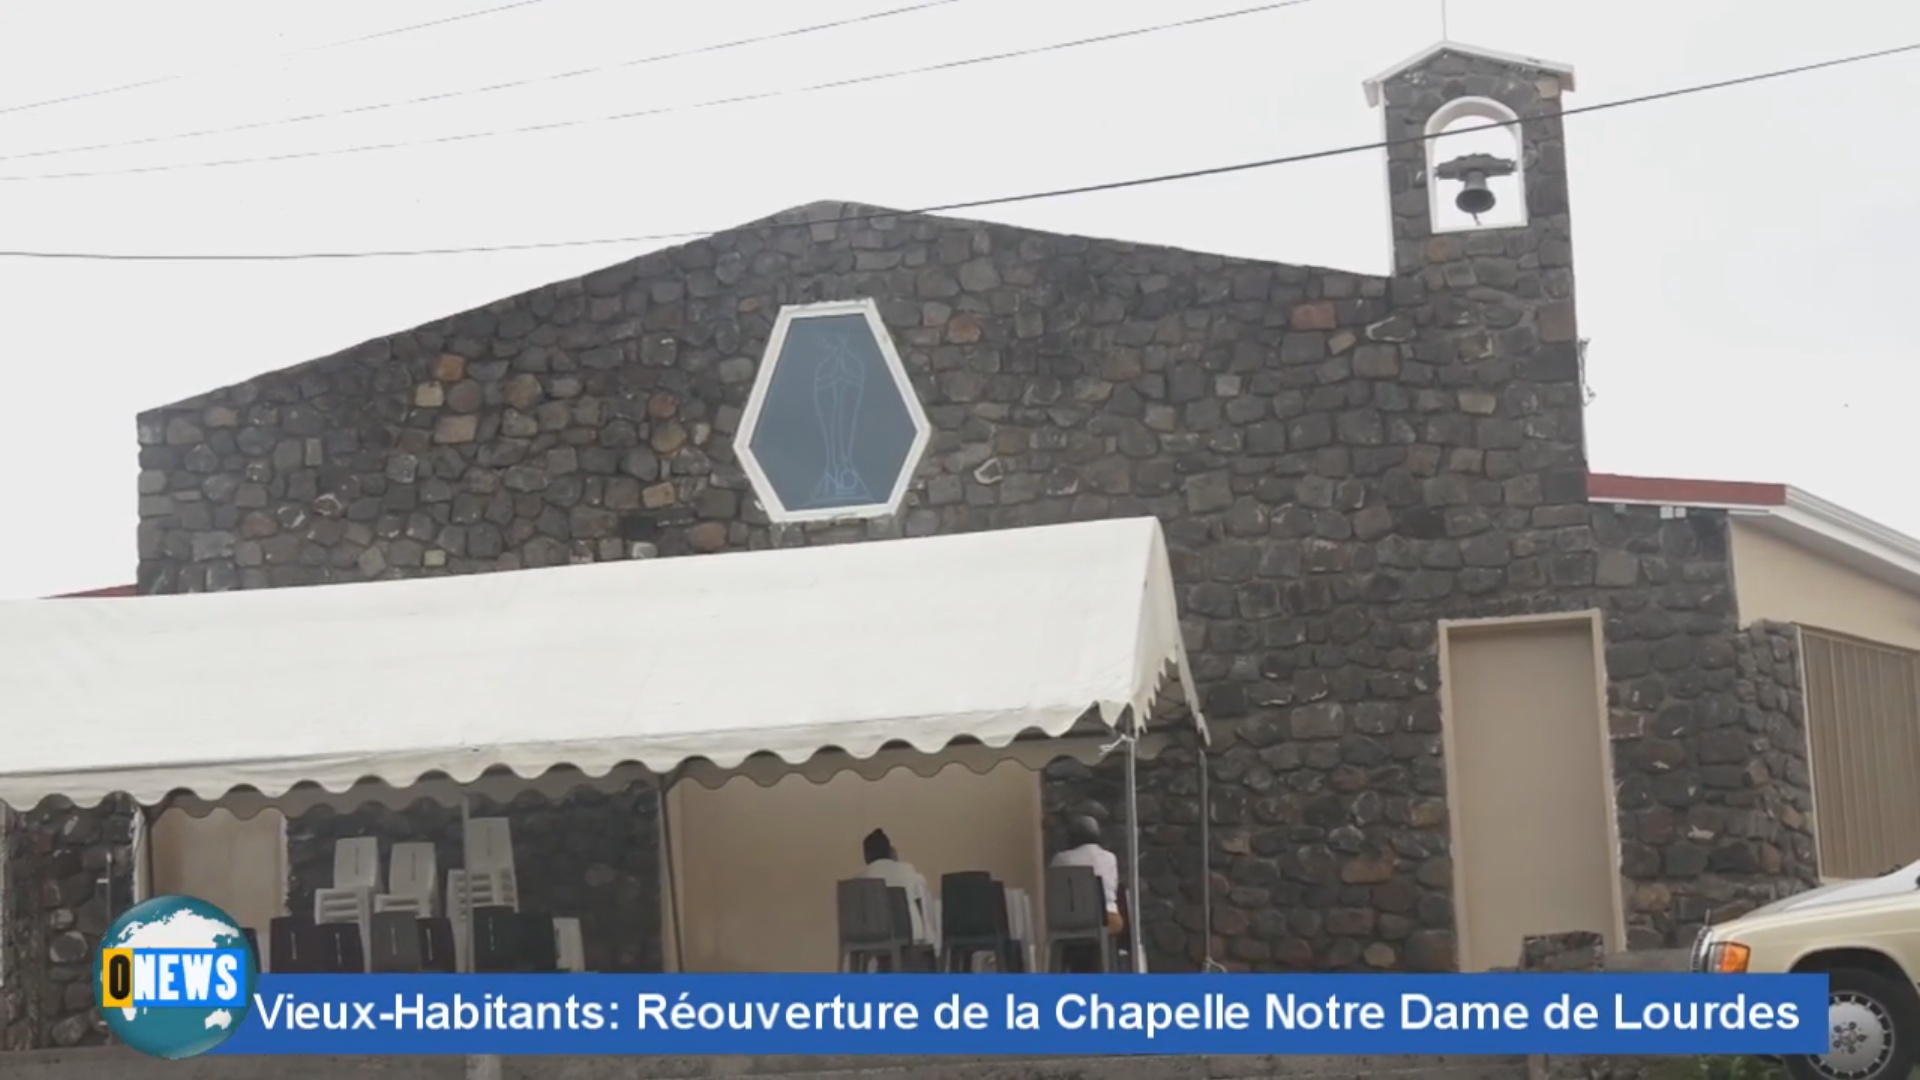 [Vidéo]Onews Guadeloupe. Réouverture de la Chapelle notre dame de Lourdes à Vieux habitants